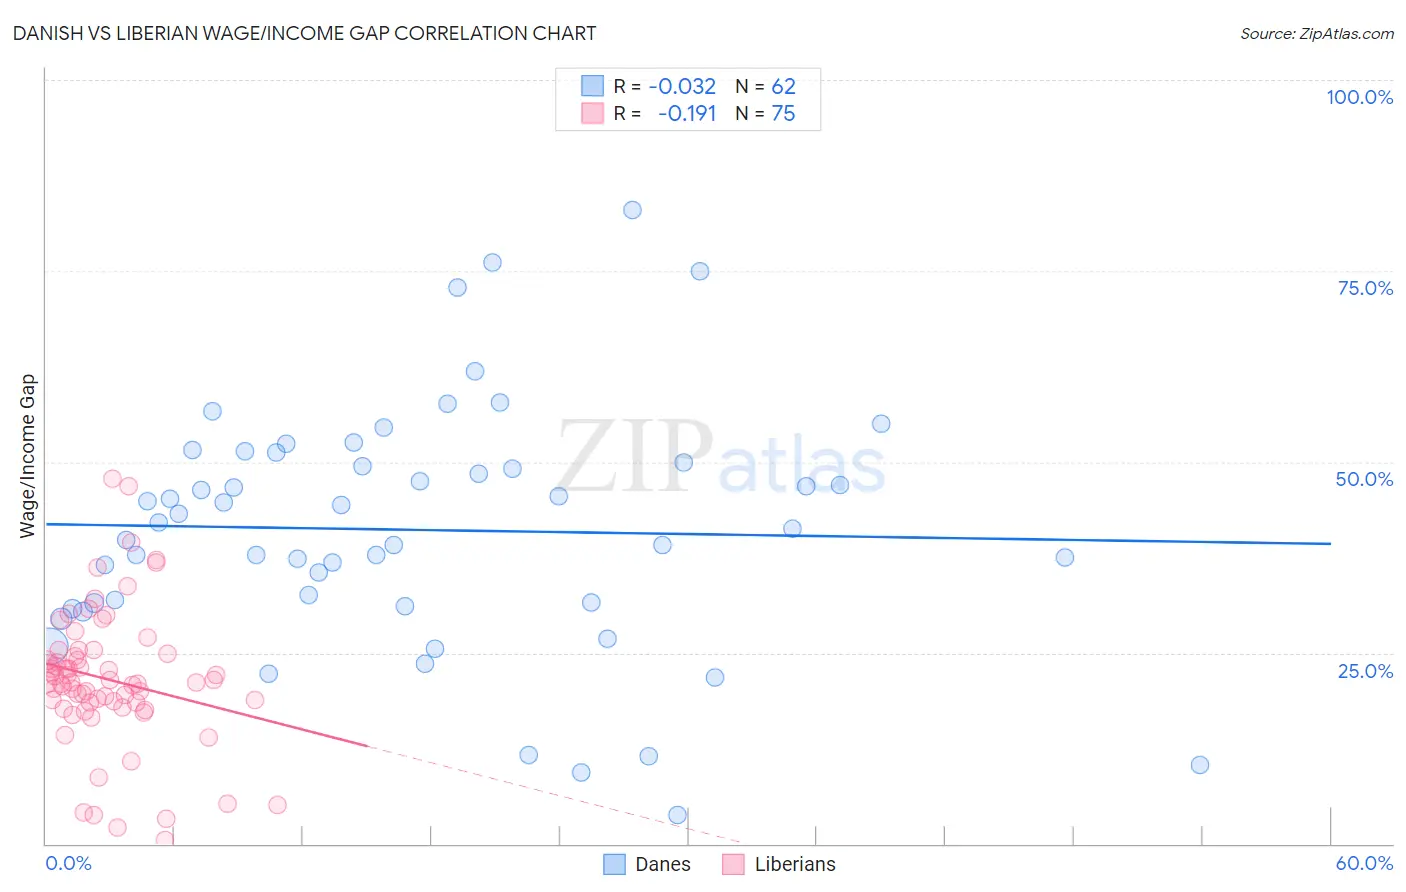 Danish vs Liberian Wage/Income Gap